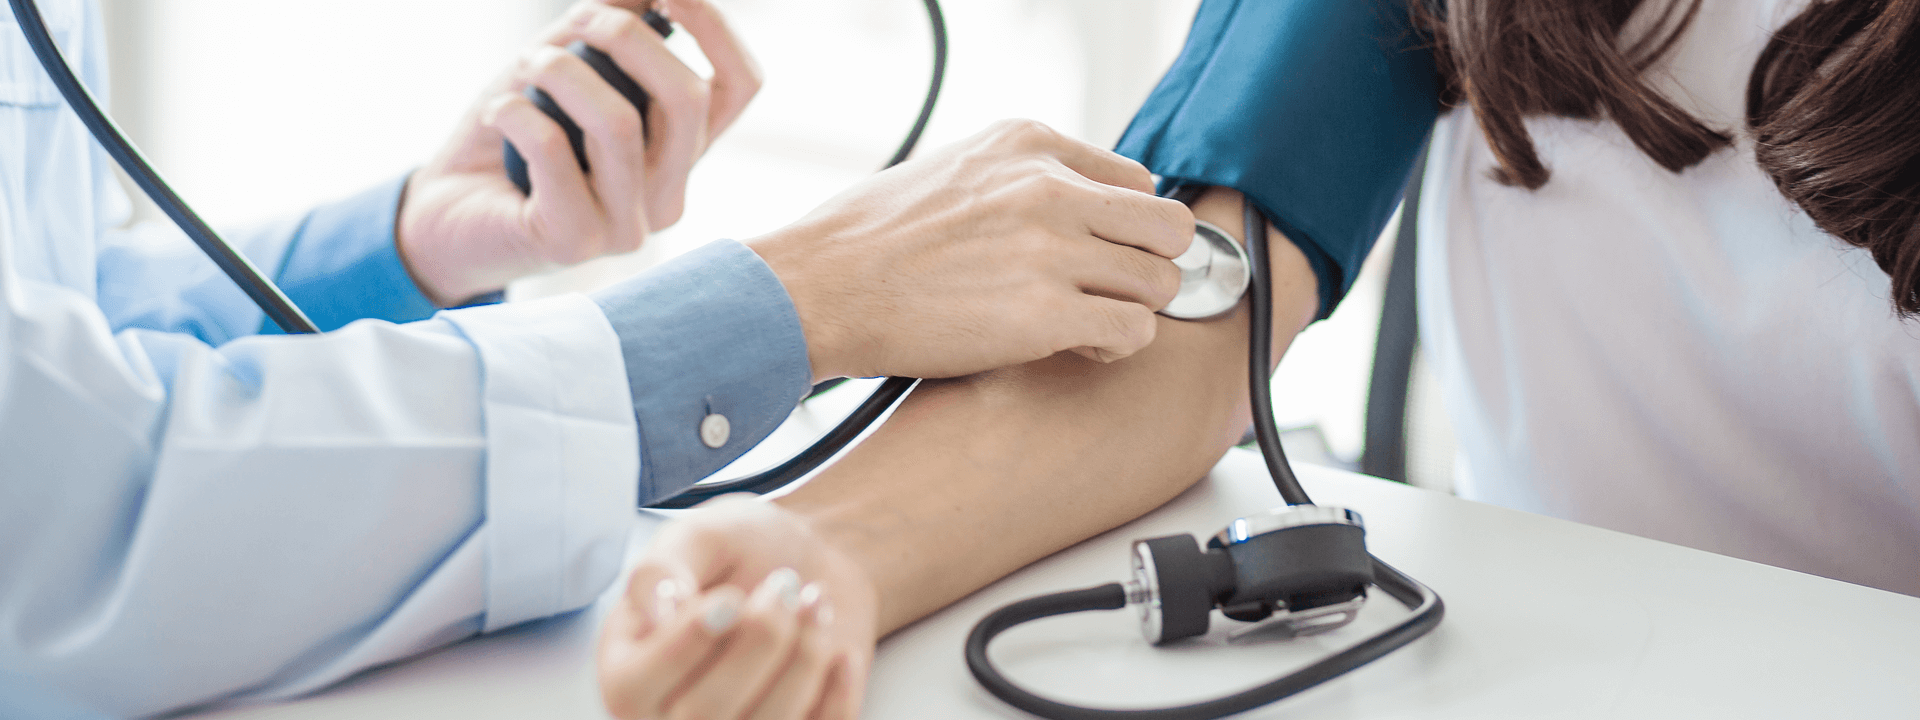 High Blood Pressure and Dementia Risk